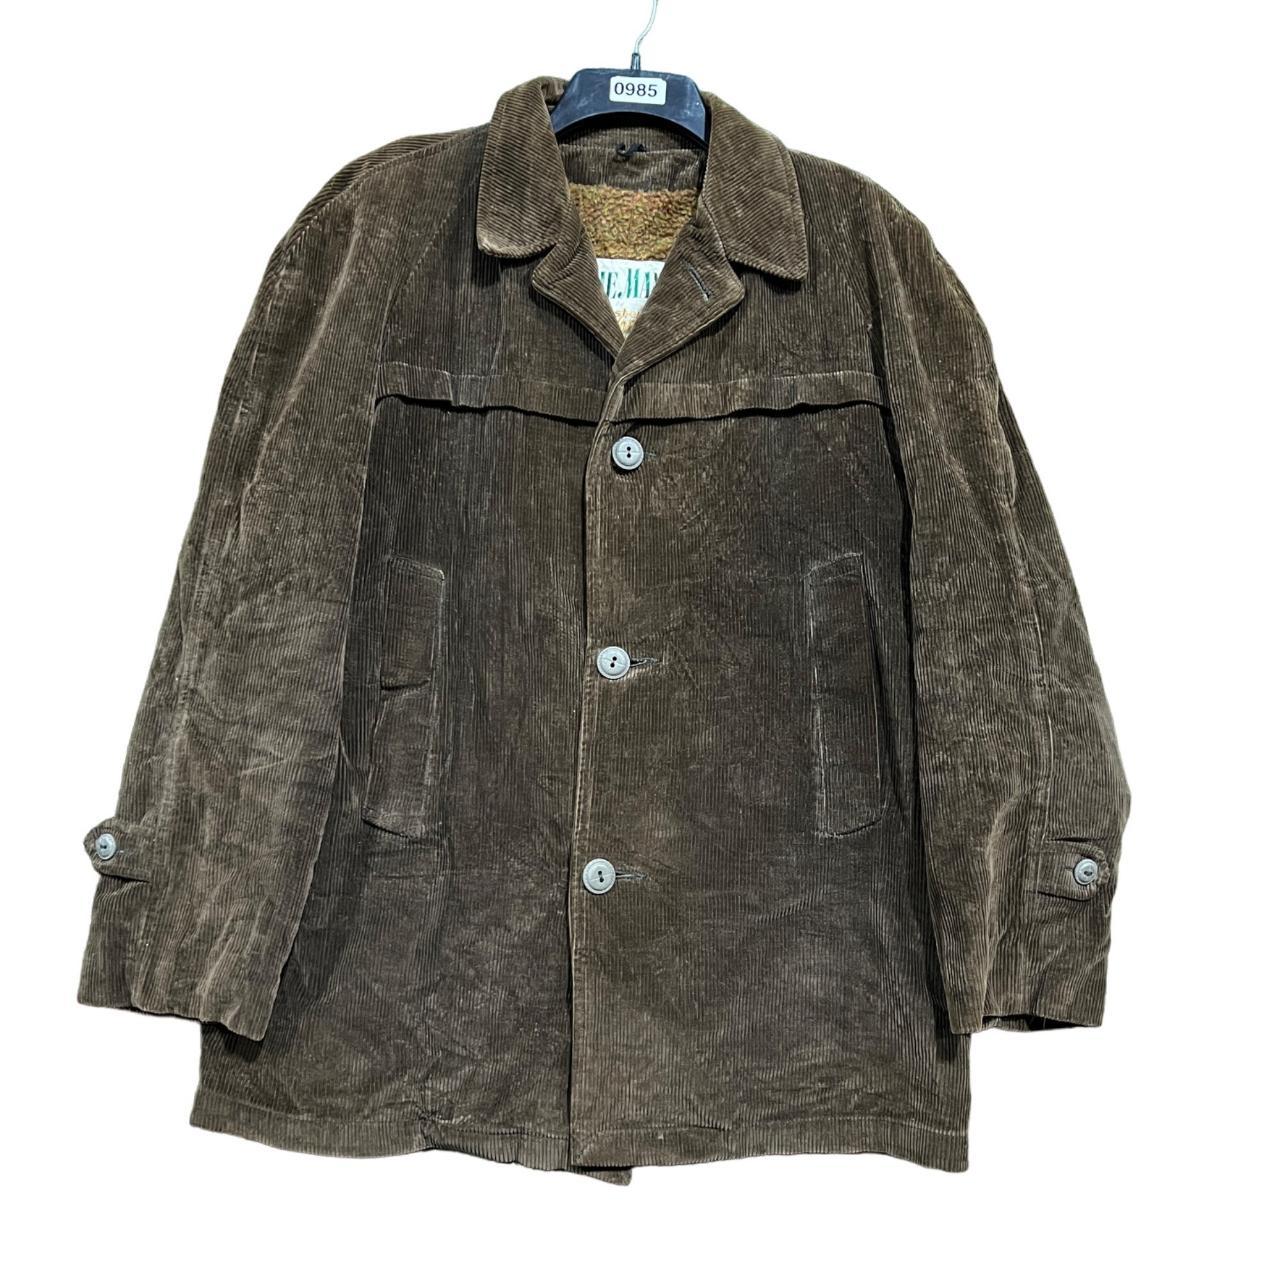 vintage the man by mister 365 jacket size xl Size:... - Depop